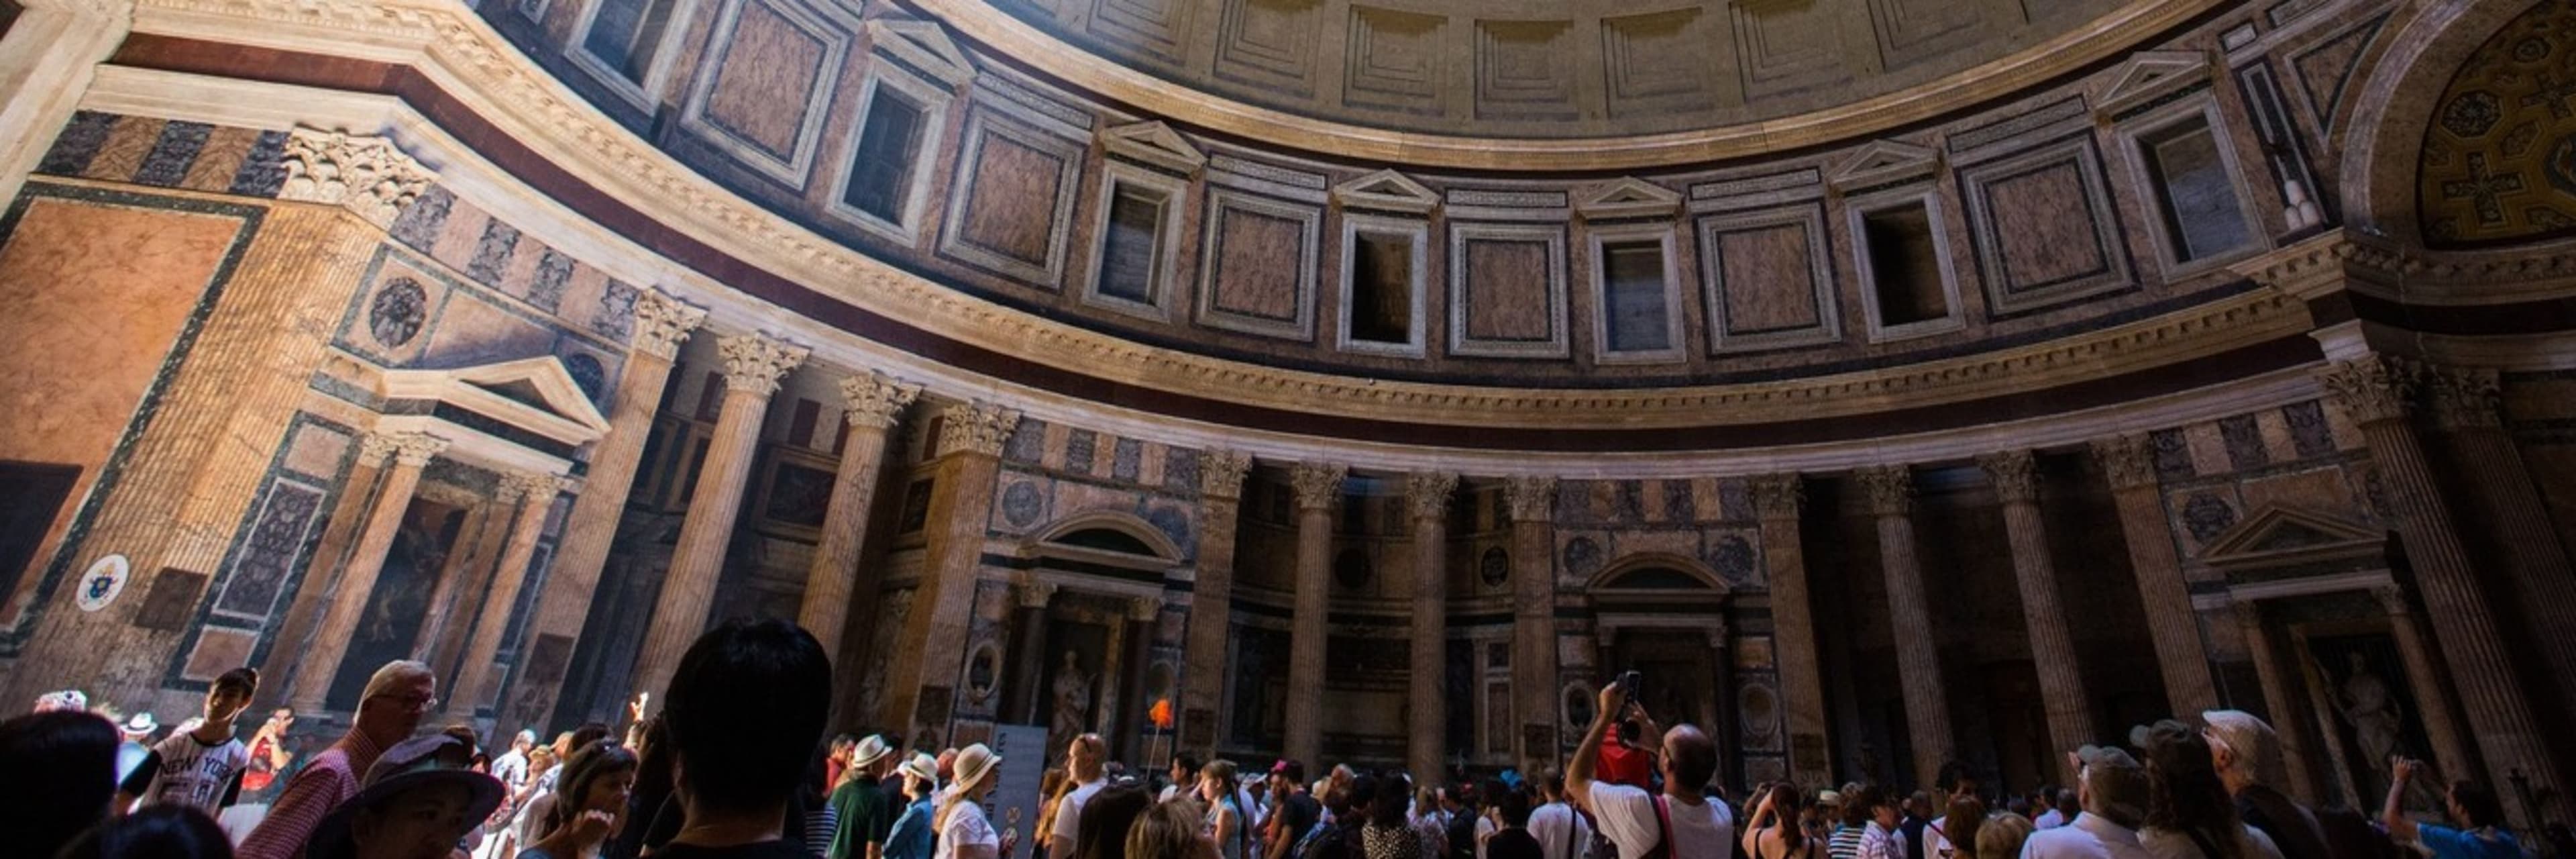 inside pantheon